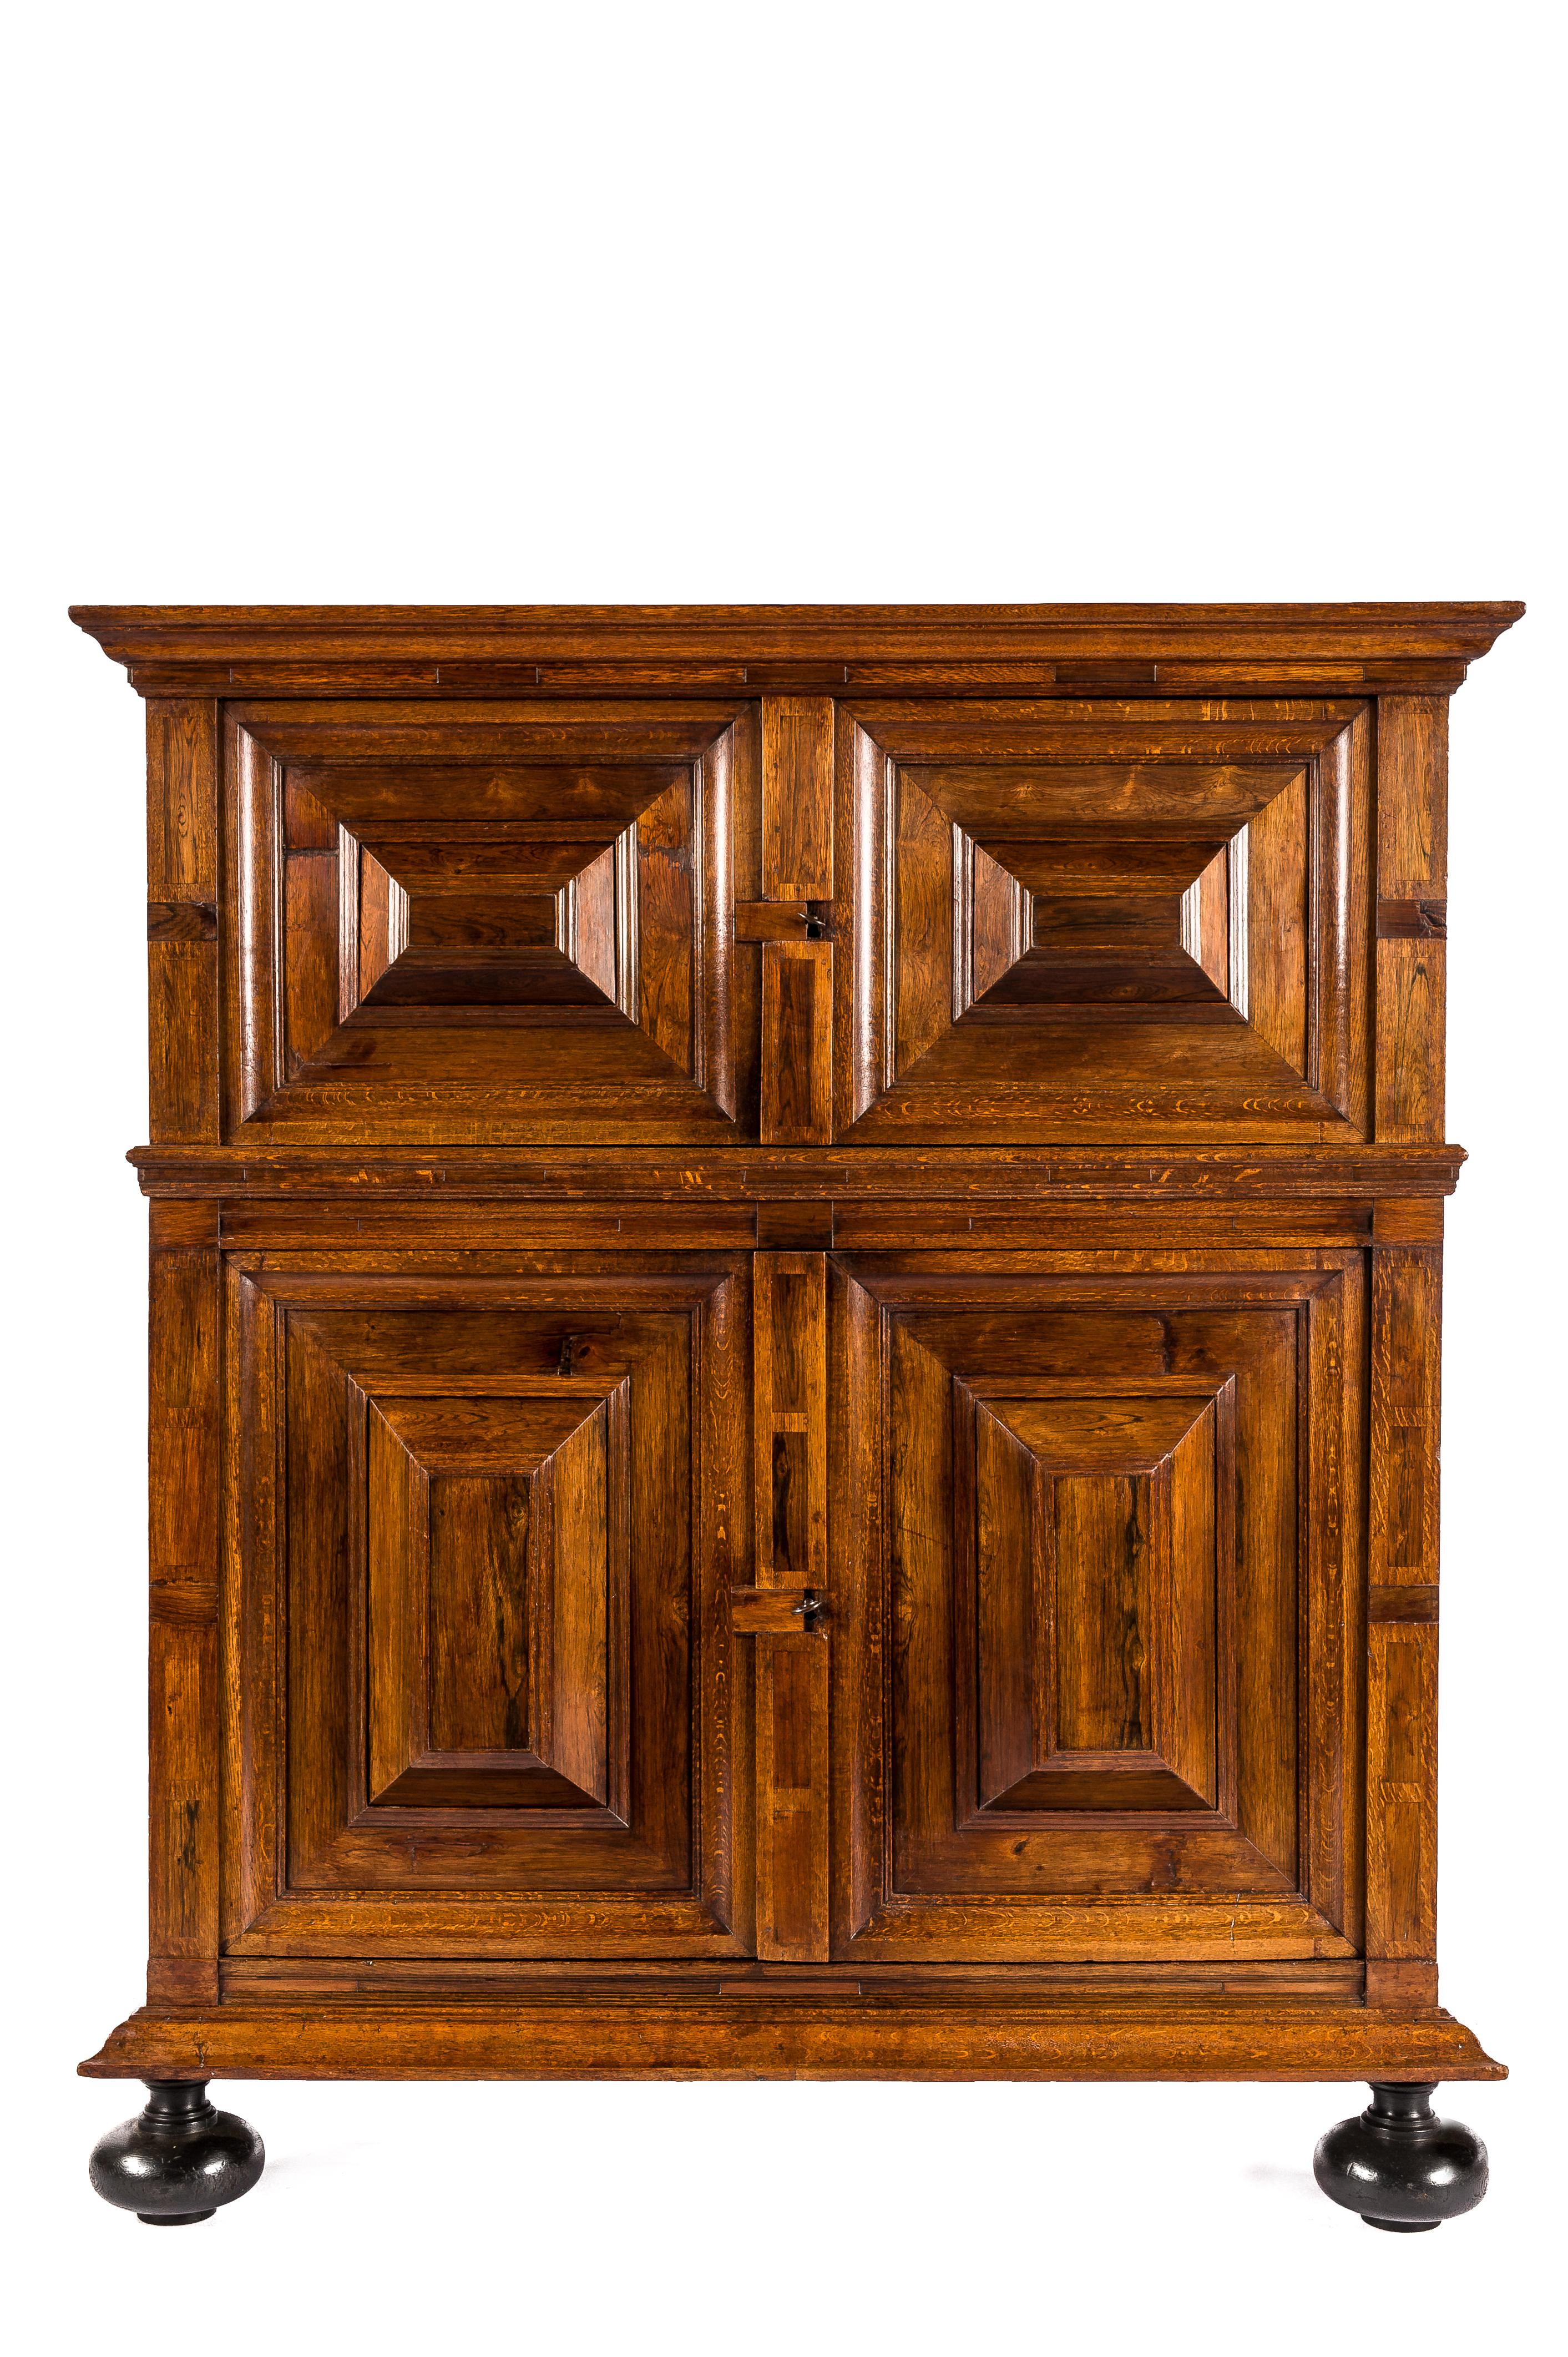 Ein schöner viertüriger Renaissance-Schrank aus dem frühen 18. Jahrhundert in bester Qualität aus massiver Eiche und Nussbaumfurnier. Der Schrank hat eine warme Honigfarbe, kombiniert mit tiefem Glanz und einer reichen Patina, die über 300 Jahre